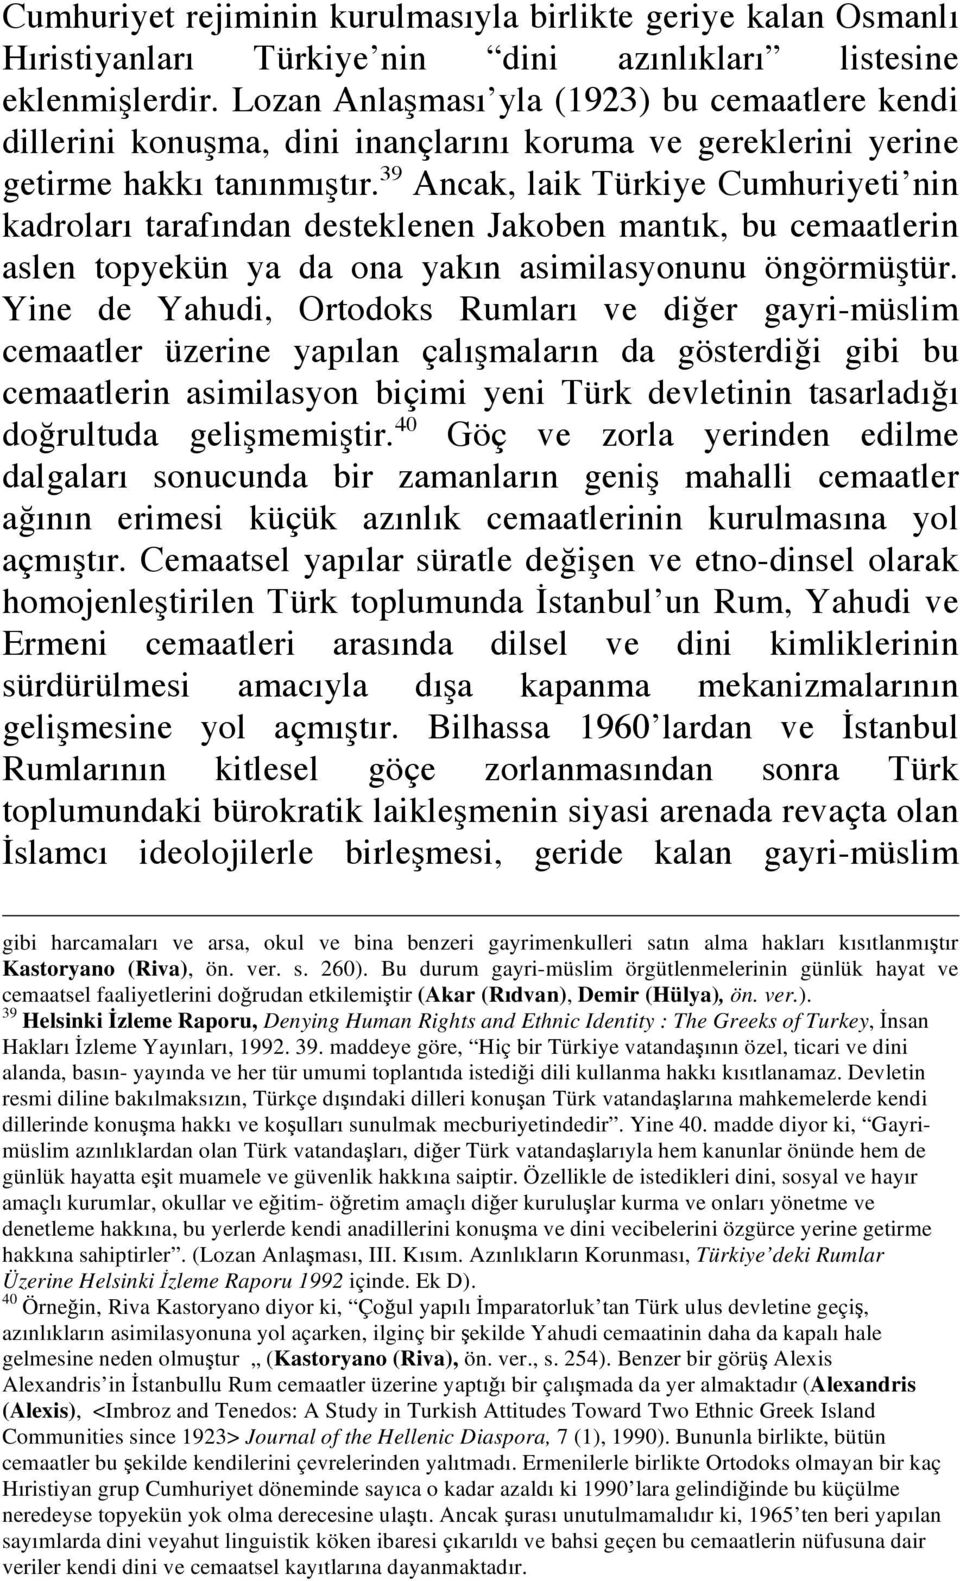 39 Ancak, laik Türkiye Cumhuriyeti nin kadroları tarafından desteklenen Jakoben mantık, bu cemaatlerin aslen topyekün ya da ona yakın asimilasyonunu öngörmü tür.